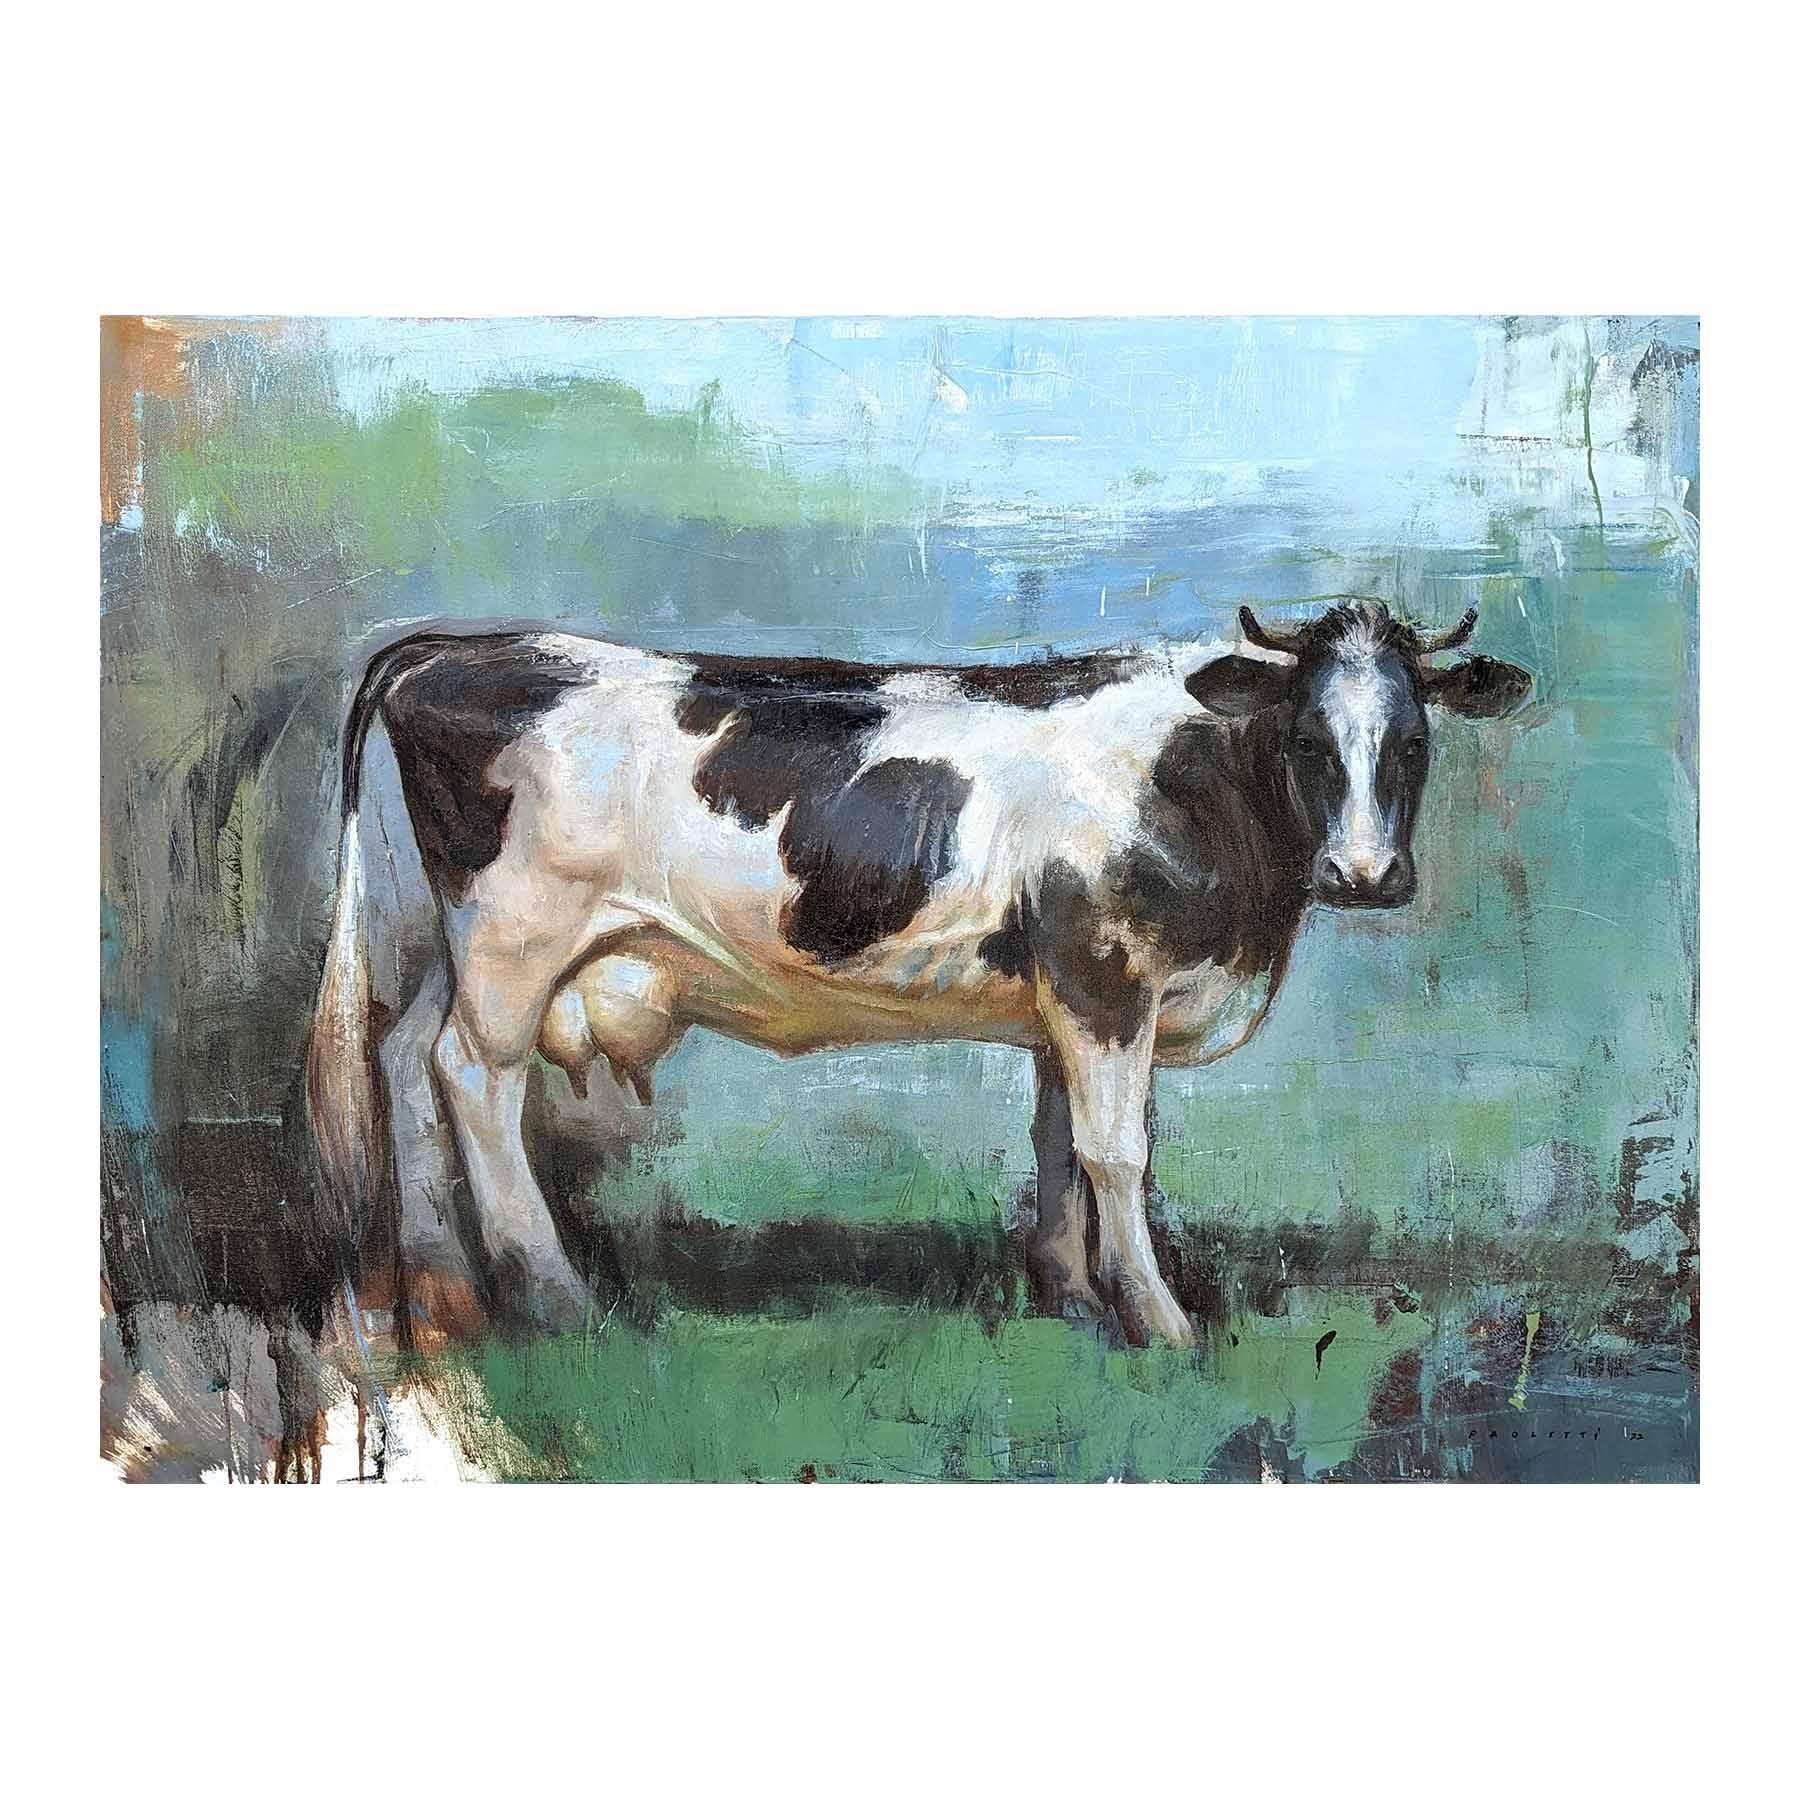 Naturalistische Tiermalerei des zeitgenössischen Künstlers Matthew Paoletti. Das Werk zeigt eine schwarz-weiß gefleckte Kuh, die in einem abstrakten grünen Feld vor einem blauen Himmel steht. Signiert und datiert vom Künstler in der rechten unteren